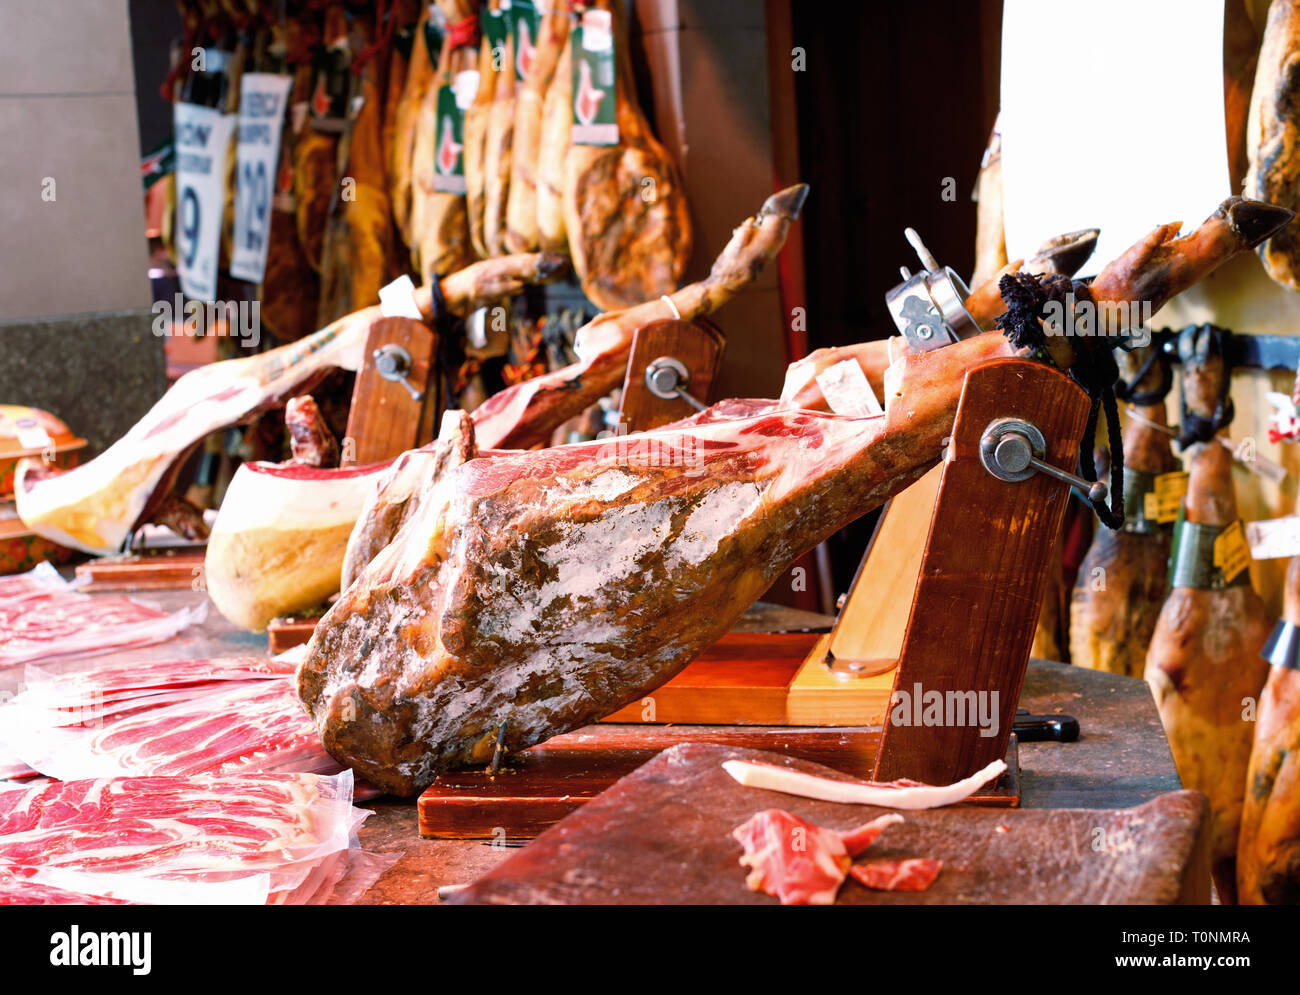 Beine der traditionellen Leckeres appetitlich Spanischer jamon auf hölzernen jamoneras Bereit zum Verkauf in kleinen Shop behoben Stockfoto